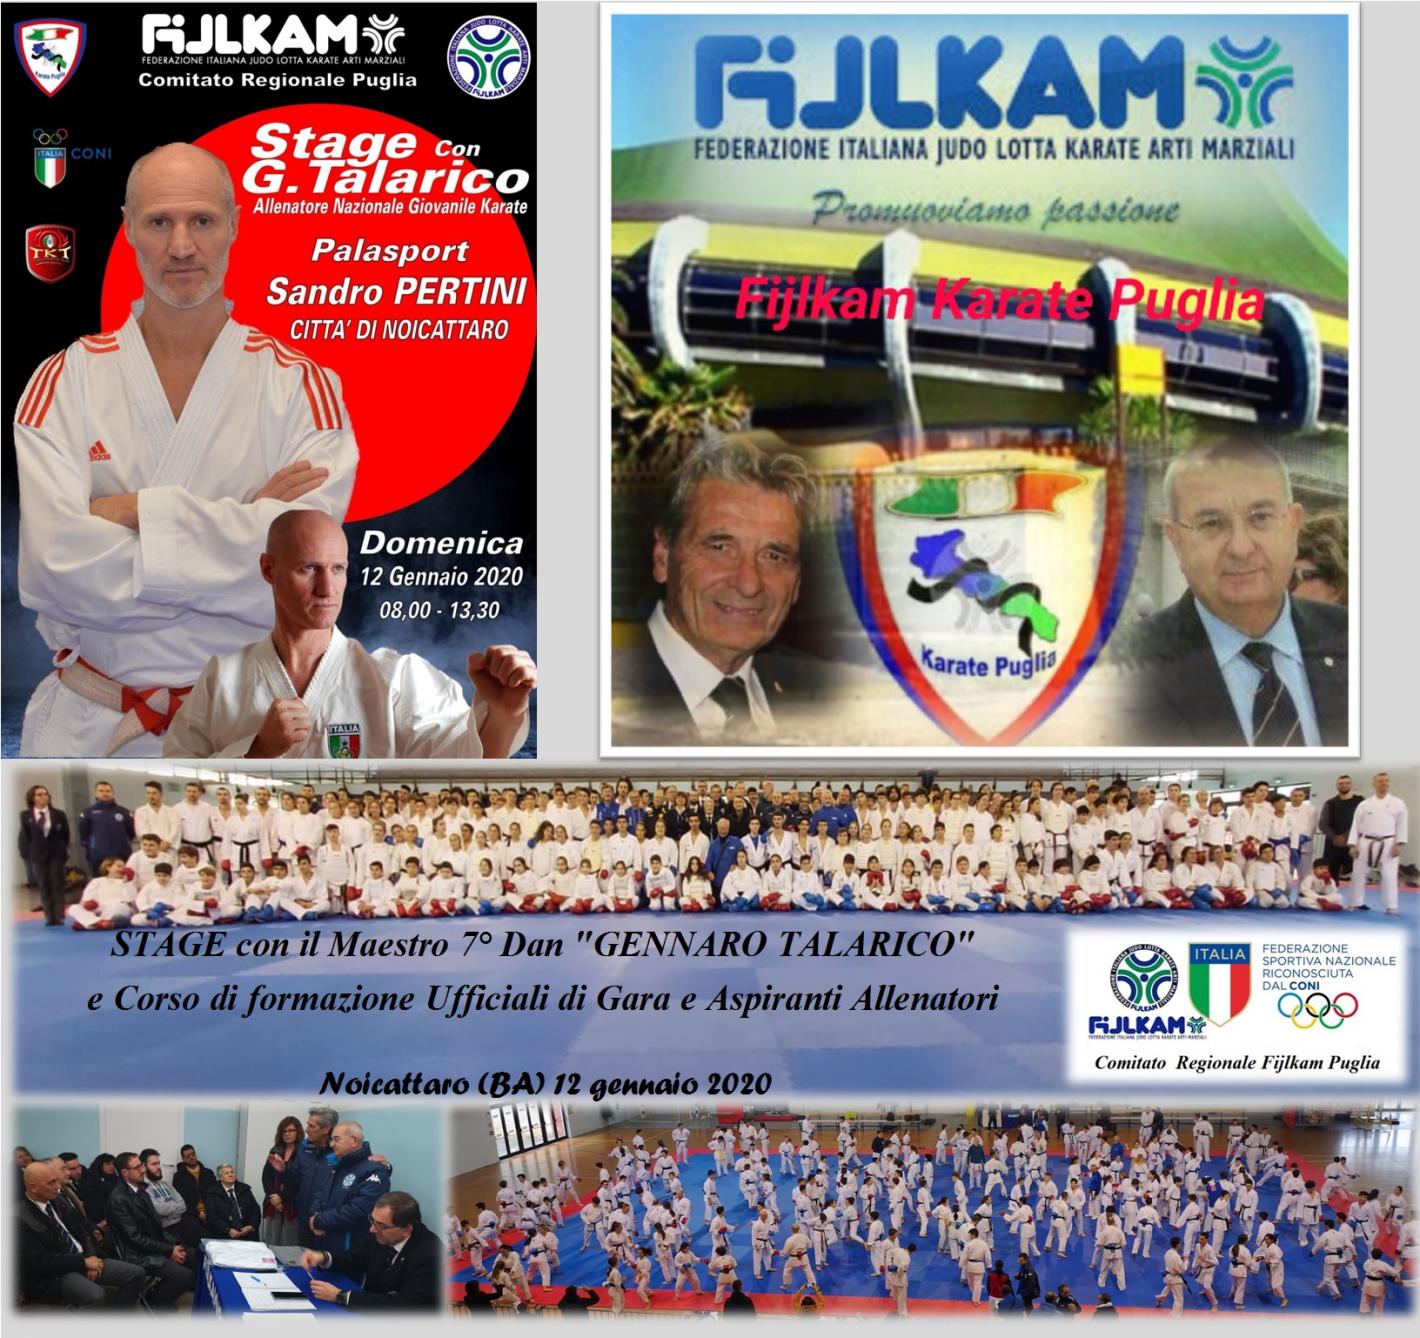 images/puglia/karate/medium/1_-_Foto_elaborata_Stage_con_G._Talarico_12-01-2020.jpg